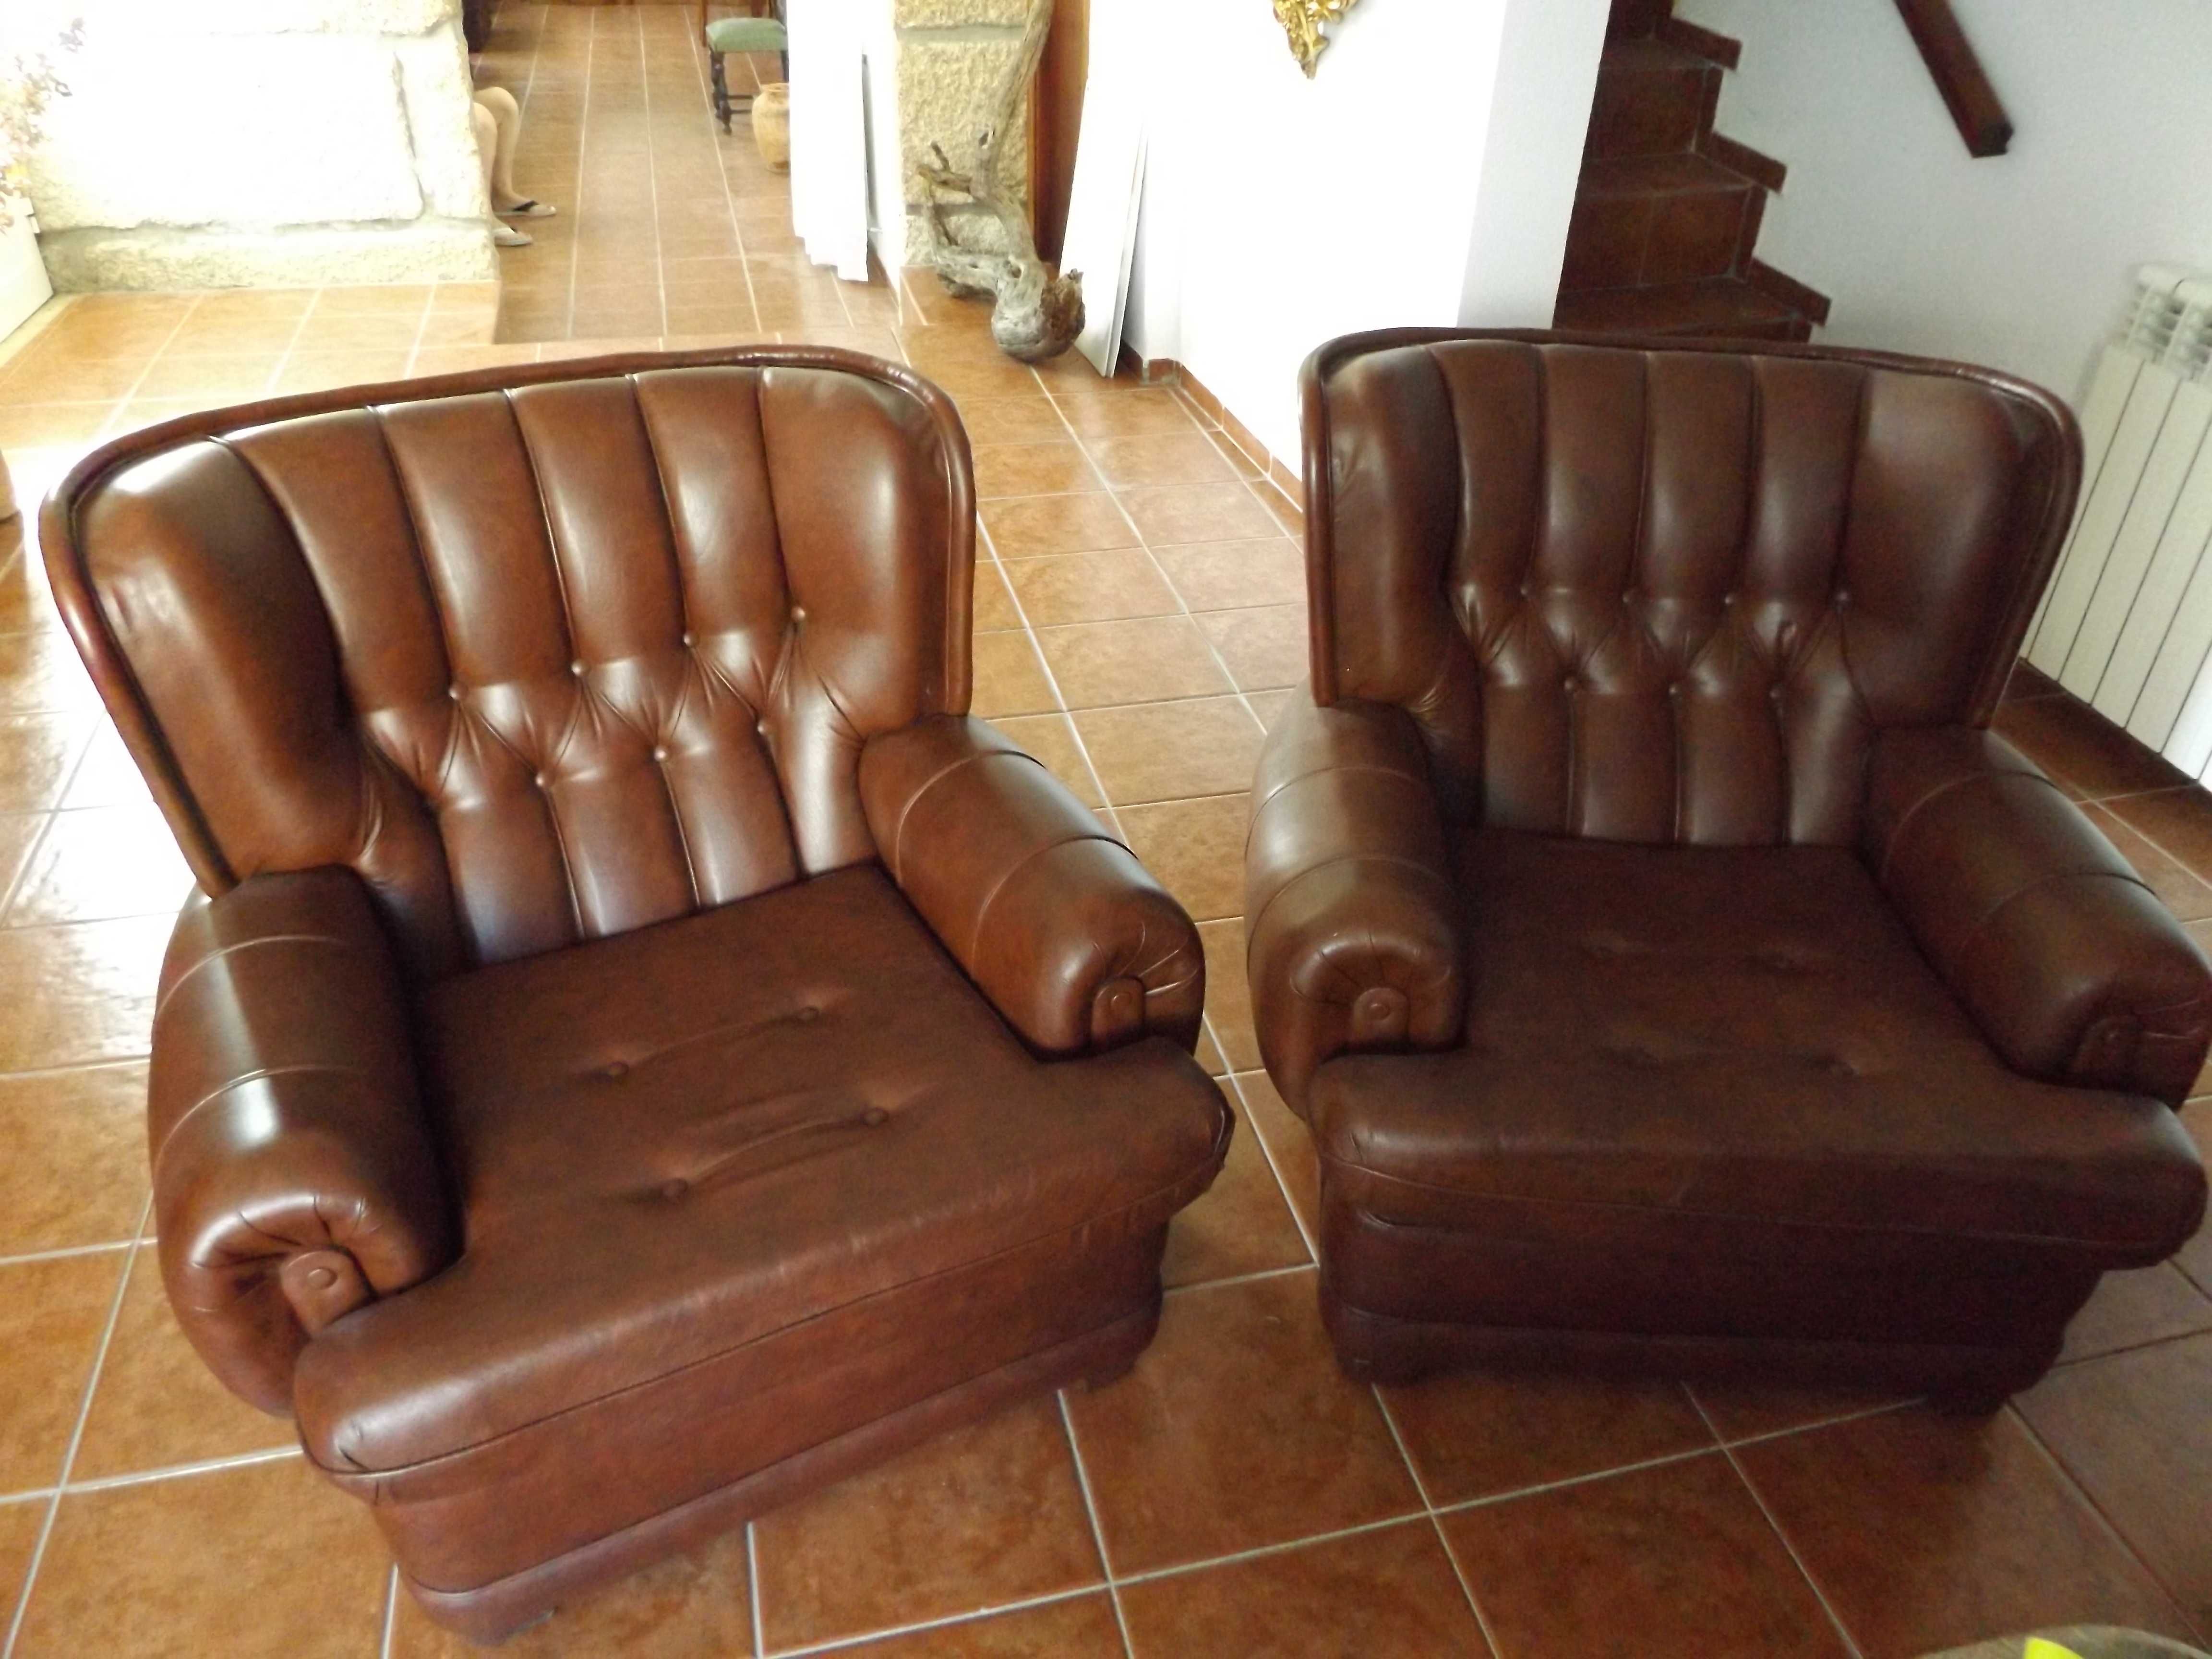 Cama de casal rustico, armário, comoda e sofás